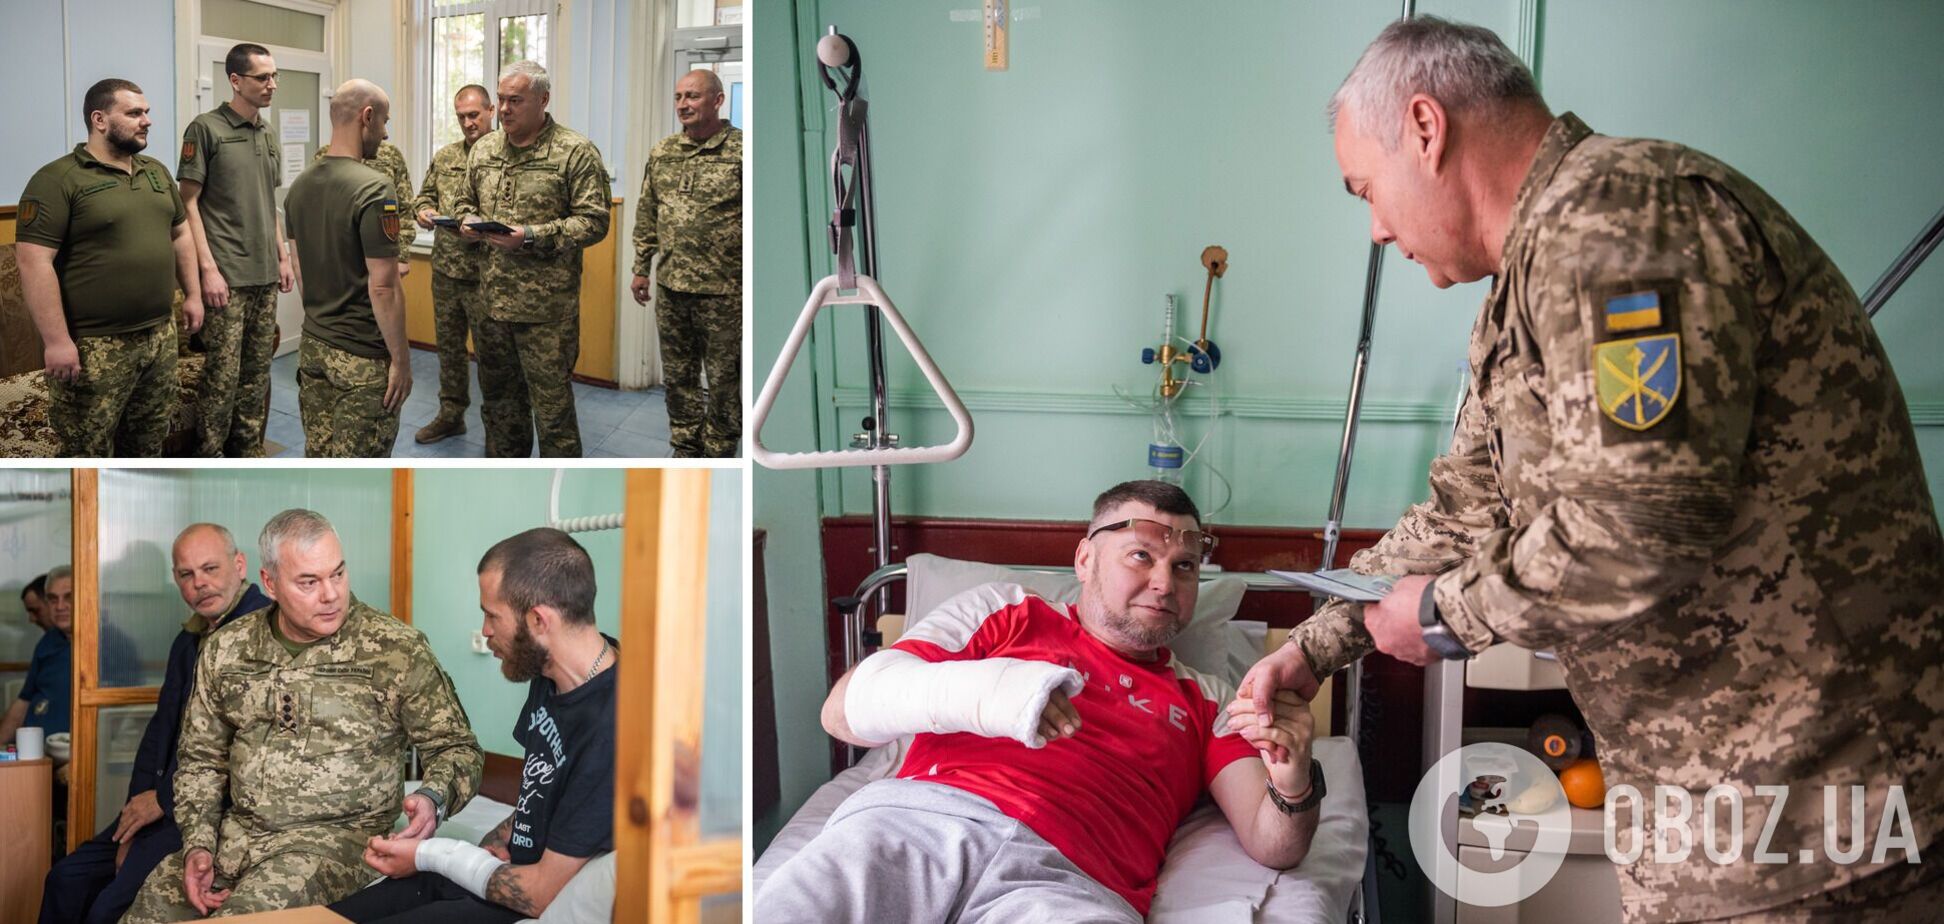 'Пошана та підтримка наших воїнів є одним з основних завдань': командувач Об'єднаних сил ЗСУ Наєв відвідав поранених військовослужбовців. Фото і відео